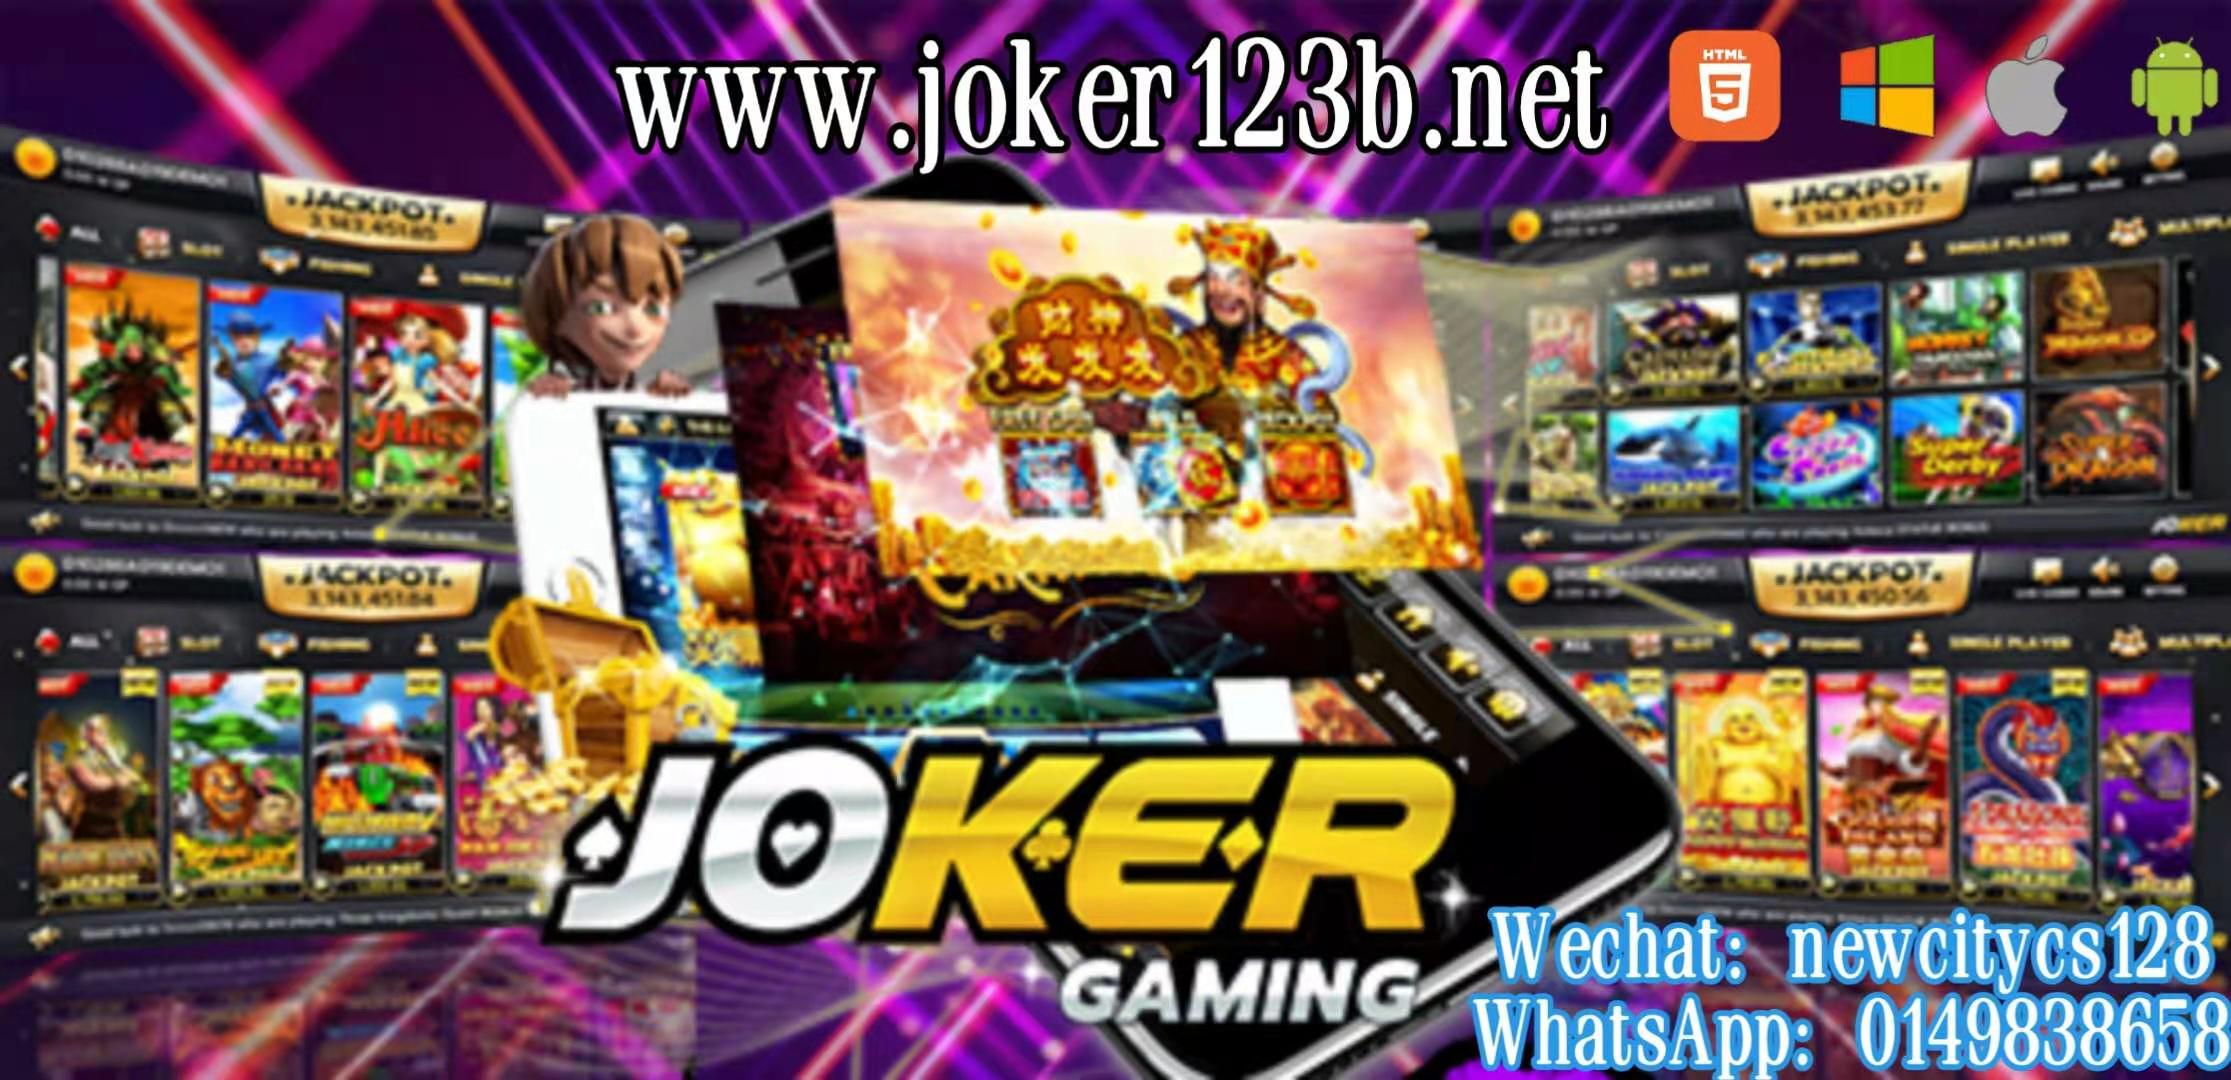 Joker123b net